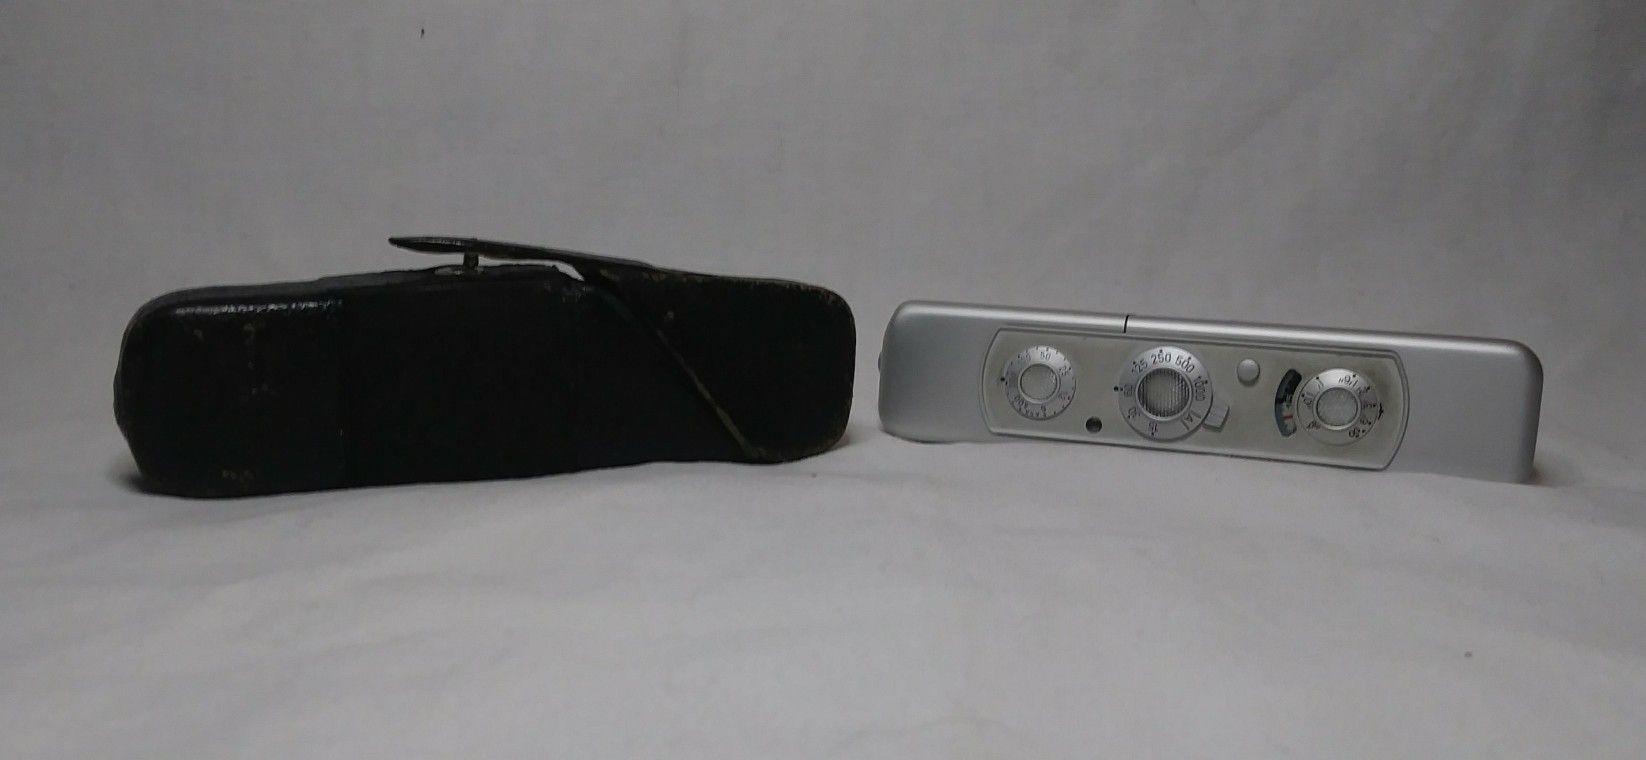 Minox C subminiature spy camera